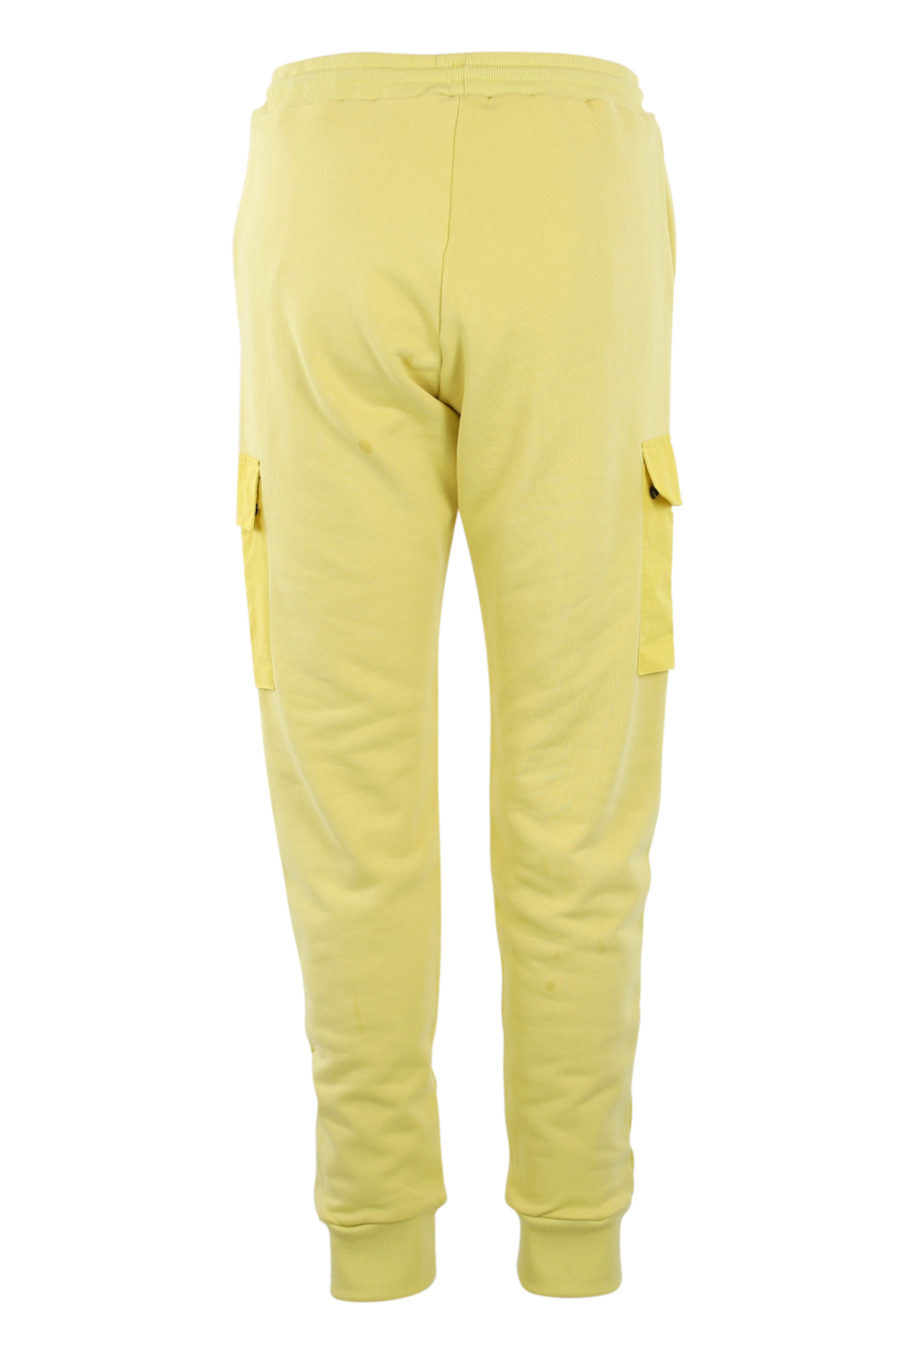 Bas de survêtement jaune avec poches - IMG 0907